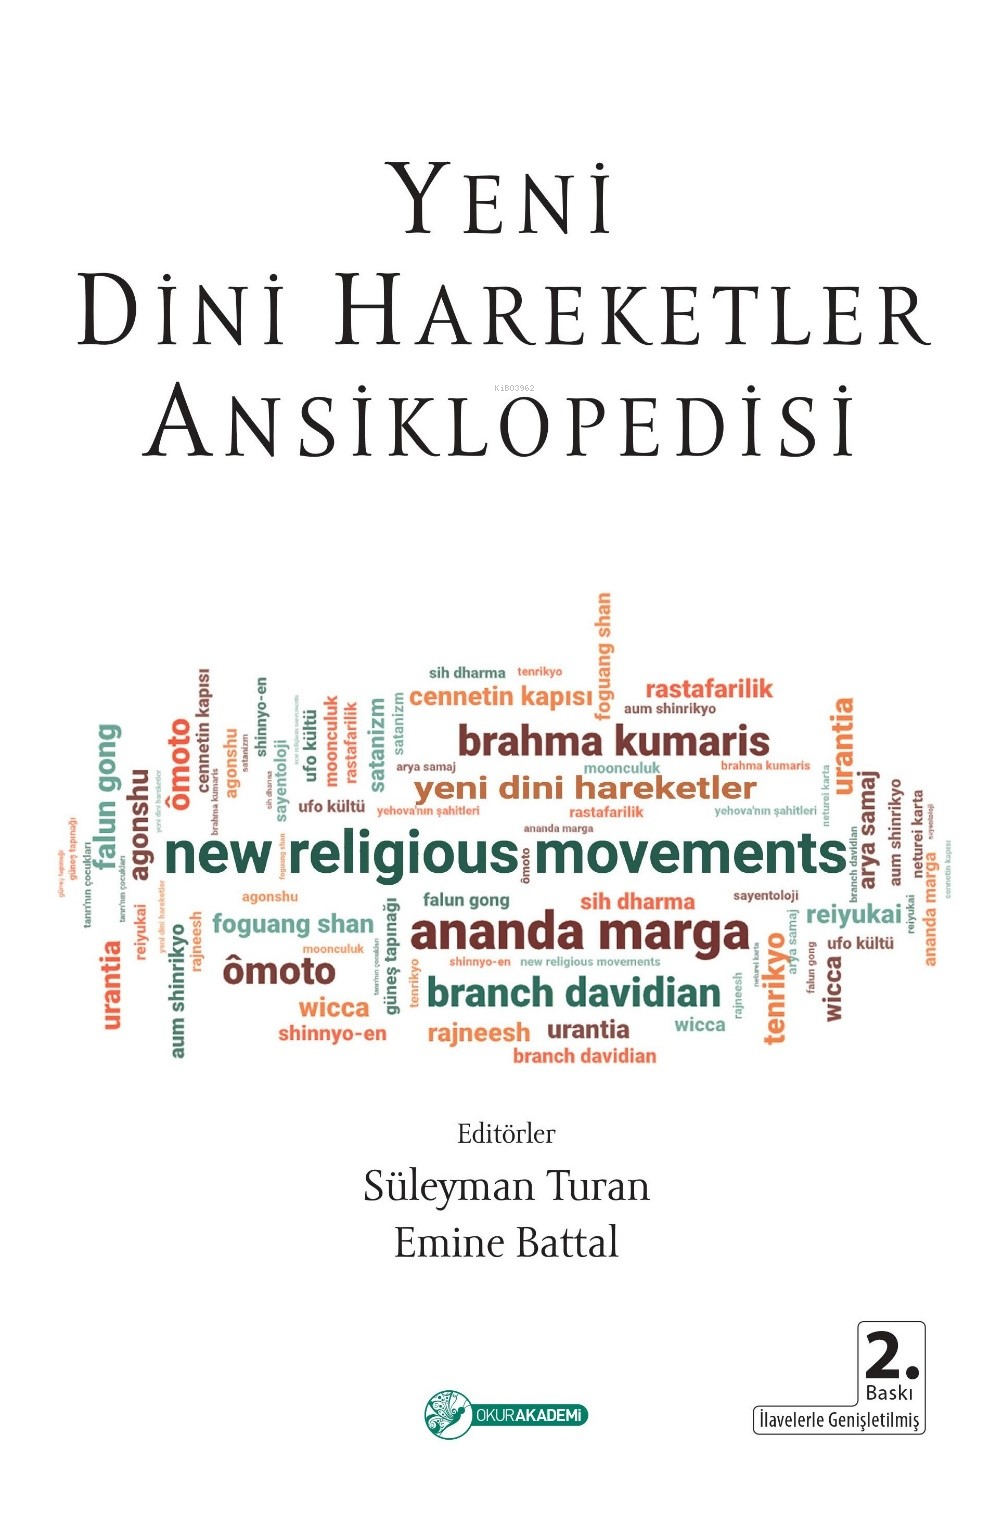 Yeni Dini Hareketler Ansiklopedisi